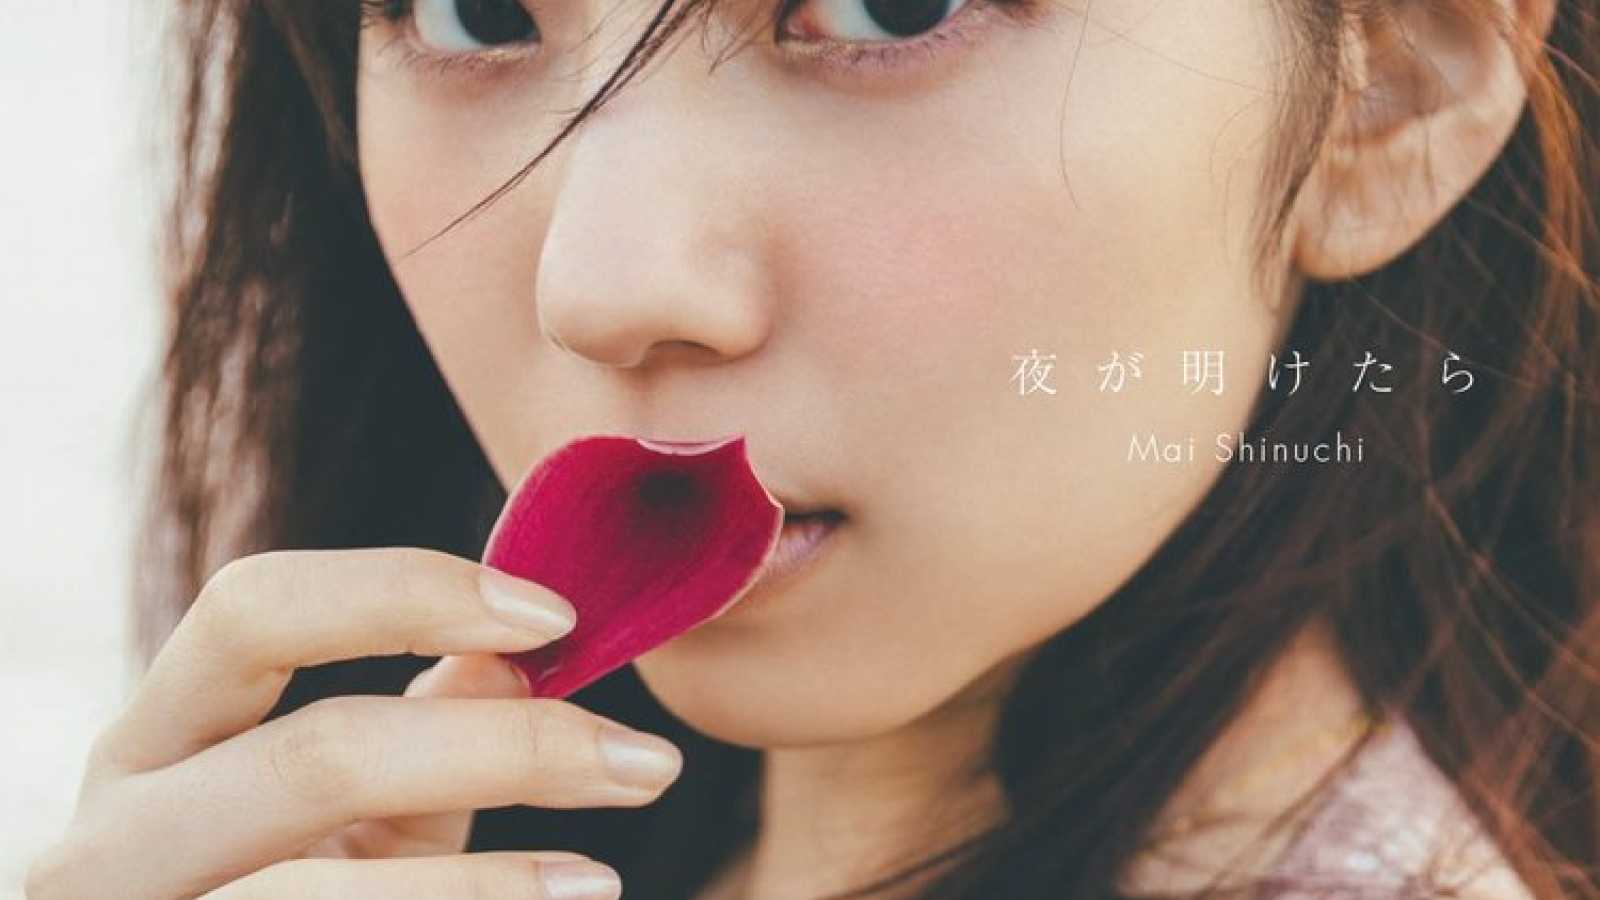 Shinuchi Mai von Nogizaka46 gibt Titel des neuen Fotobuchs bekannt © oricon.co.jp